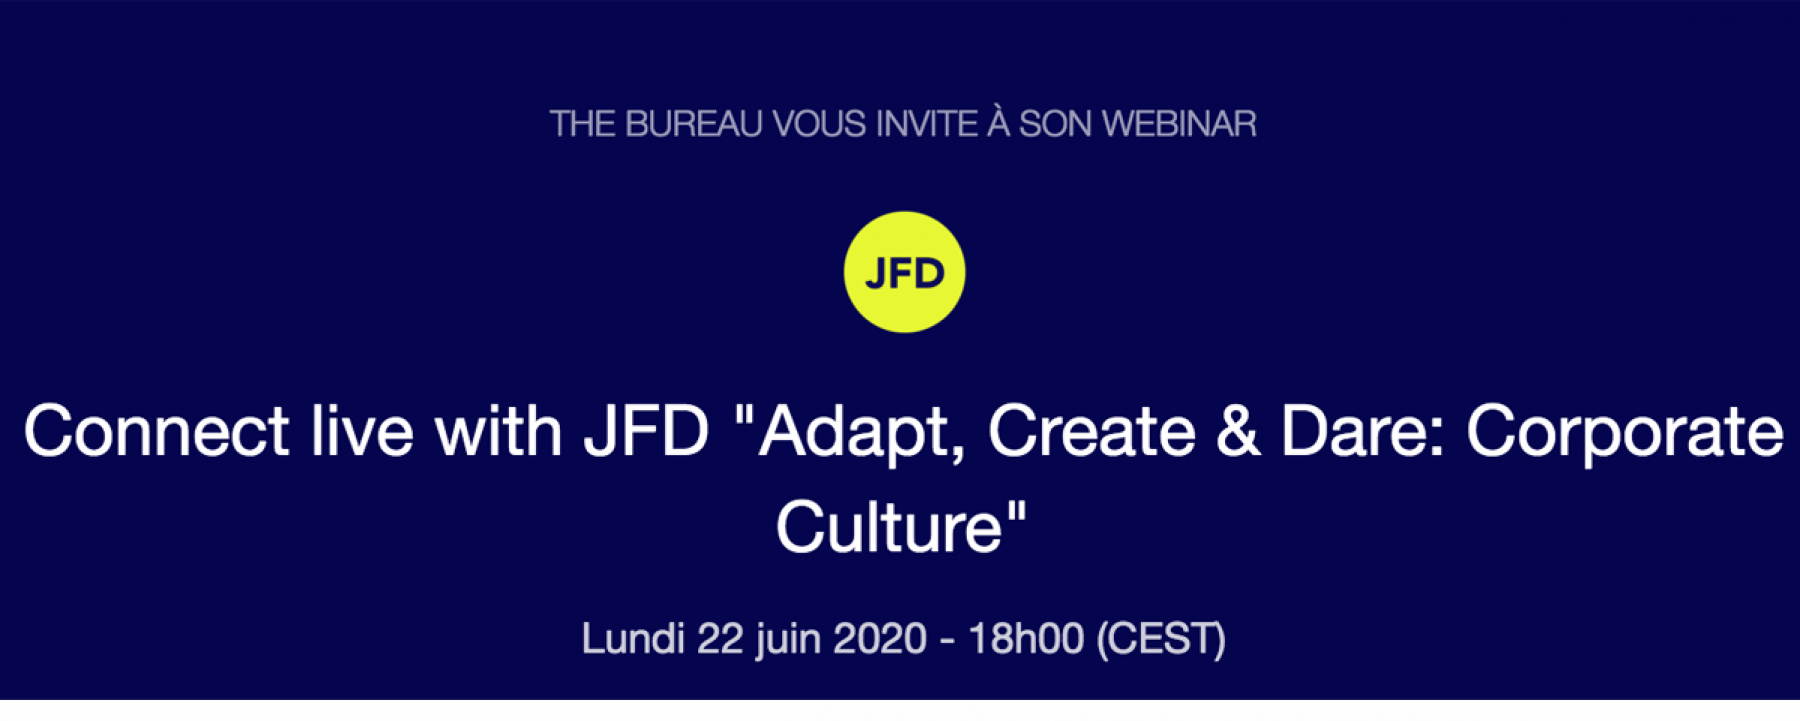 Webinar Connect live with JFD - Adapt, Create & Dare : Corporate Culture, le 22 juin 2020, organisé par The Bureau 